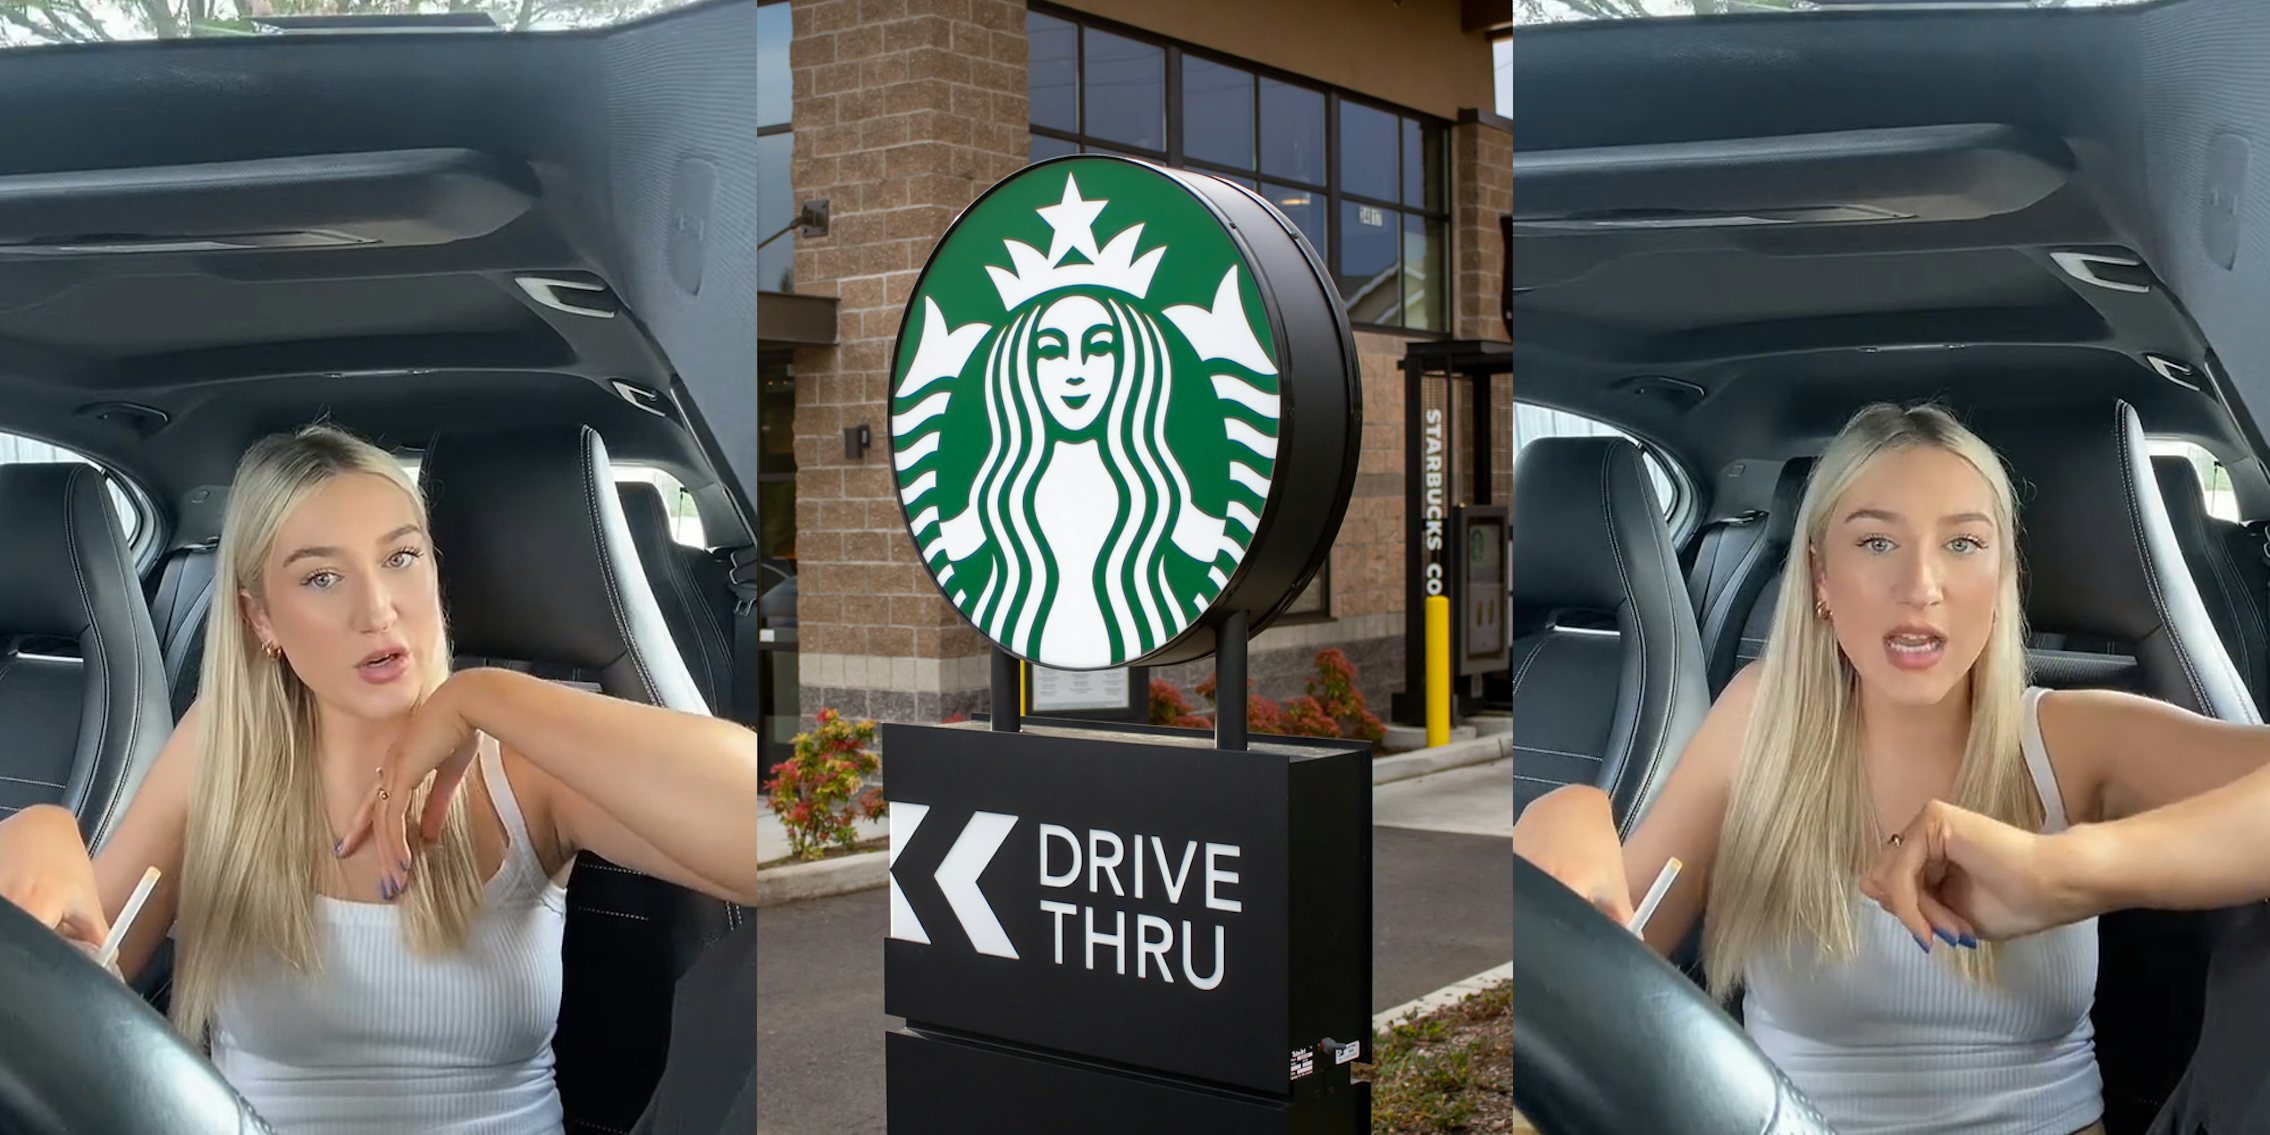 woman speaking in car (l) Starbucks drive thru sign and building (c) woman speaking in car (r)